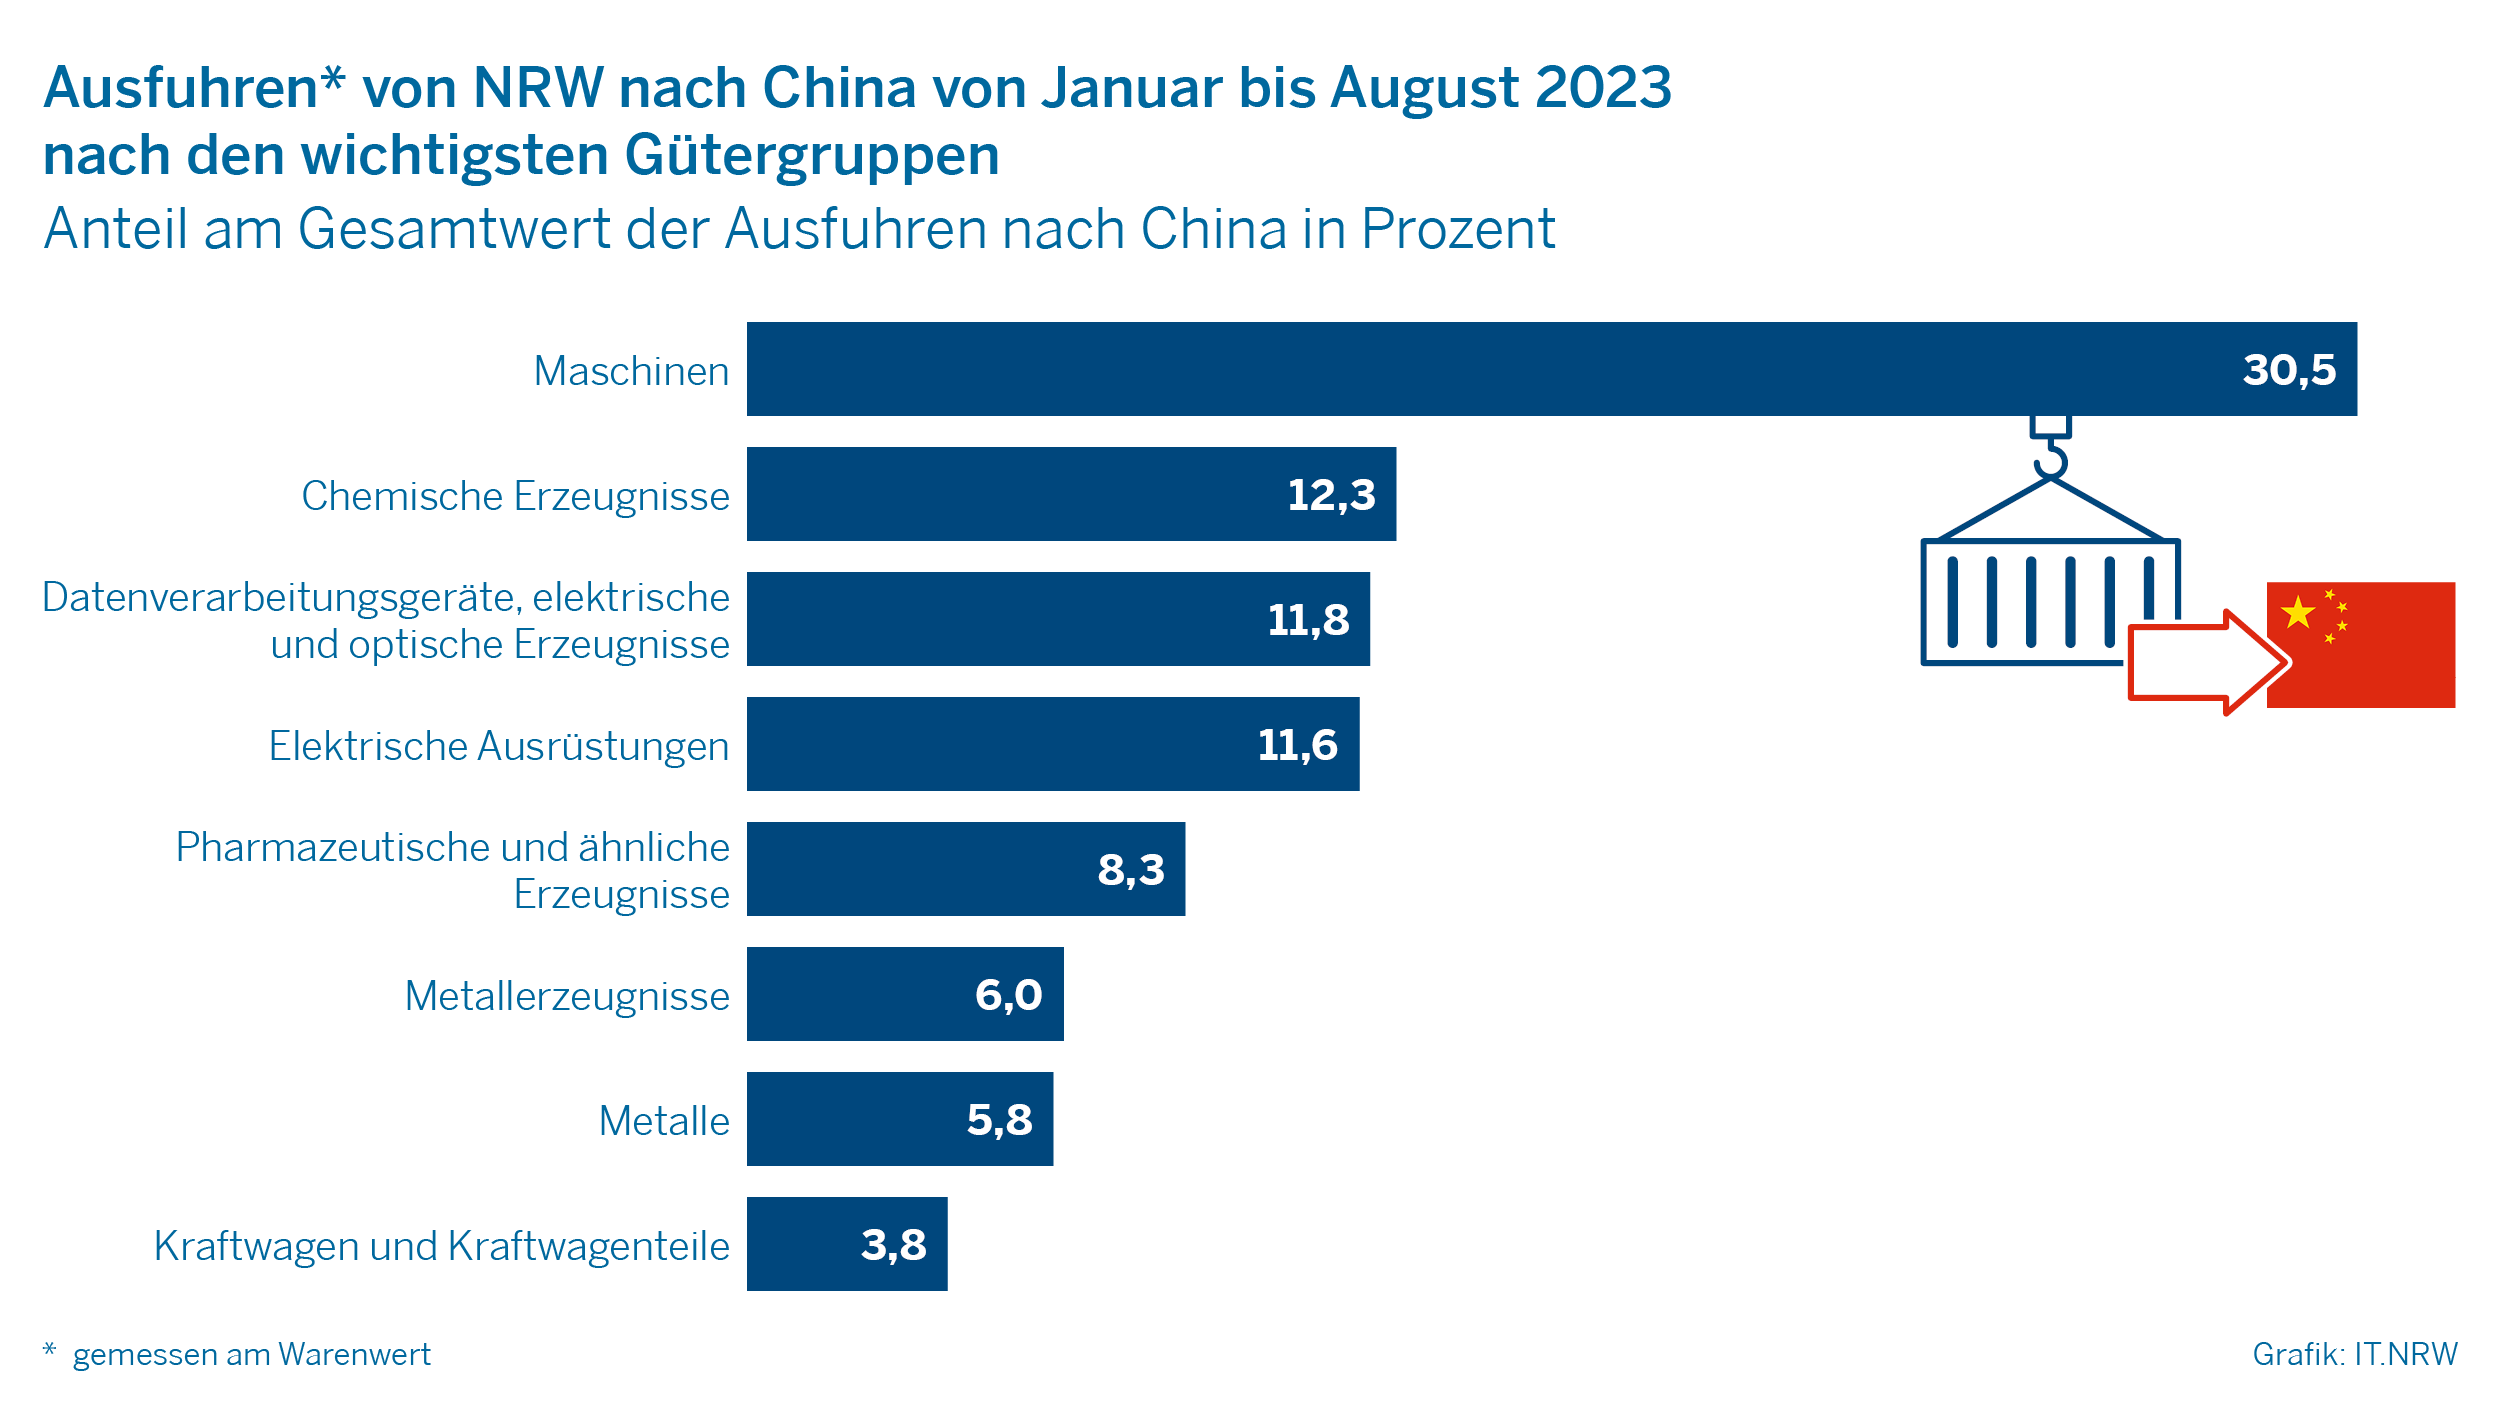 Ausfuhren von nrw nach China von Januar bis August 2023 nach den wichtigsten Gütergruppen